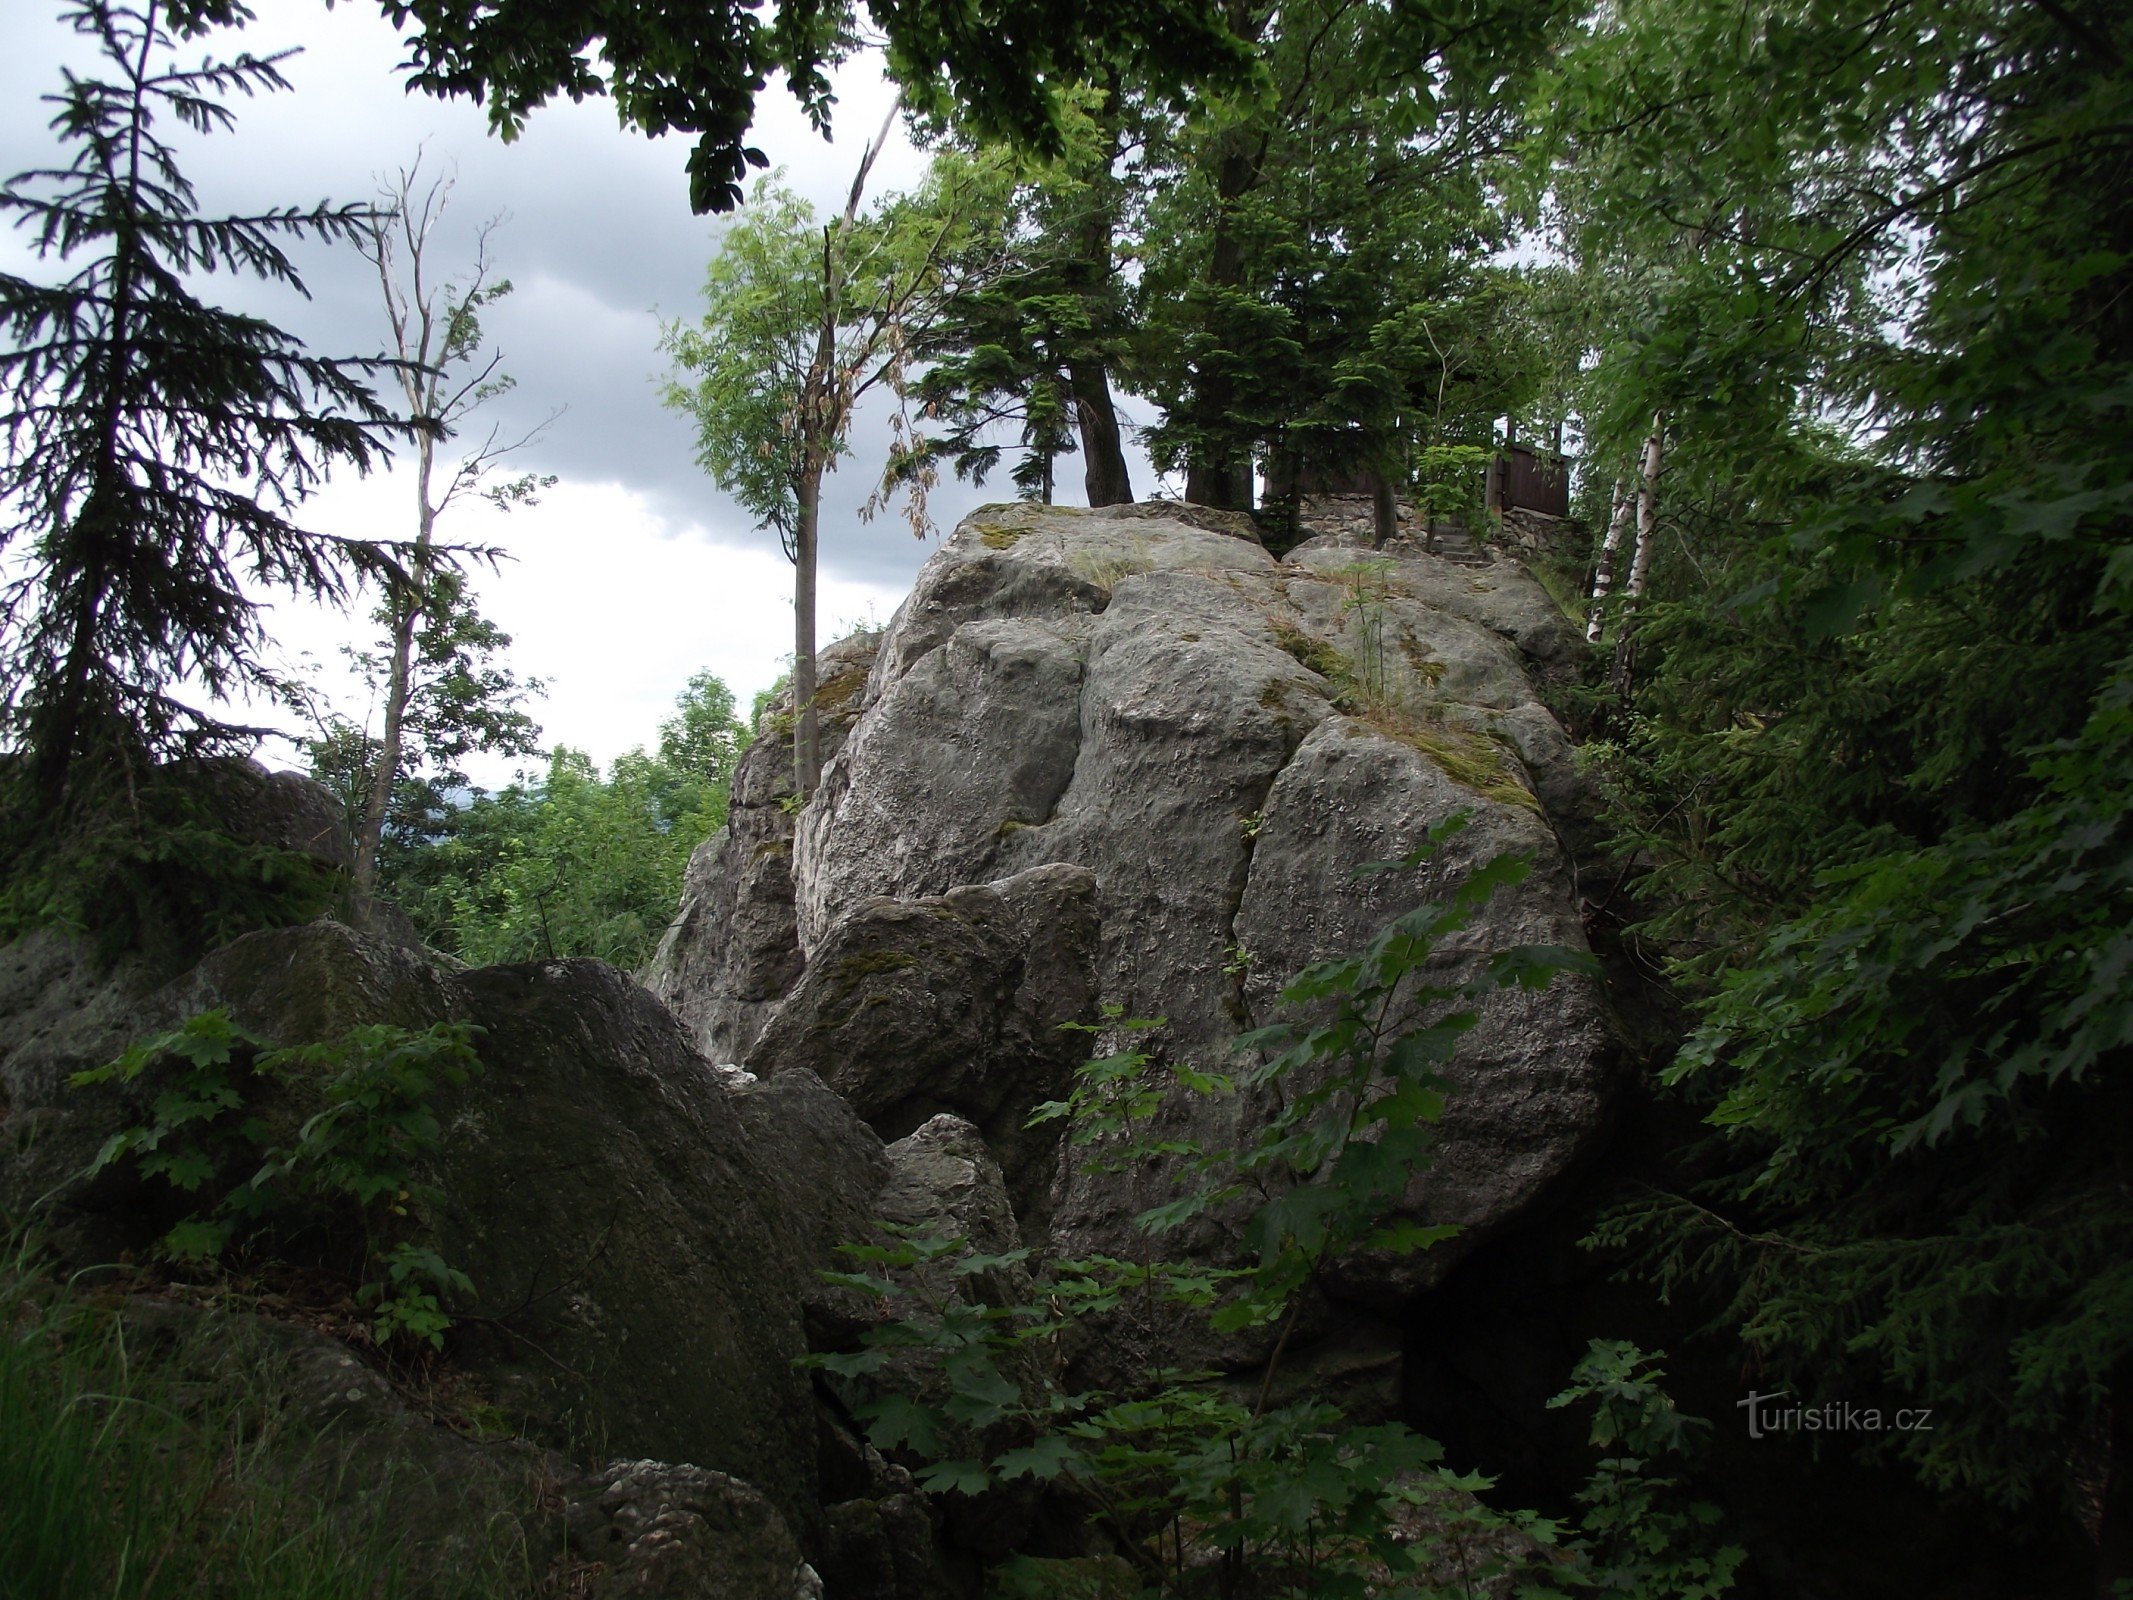 Šumperk / Bratrušov - Gradske stijene ili tri u jednom (stijene, vidikovac i vrh)